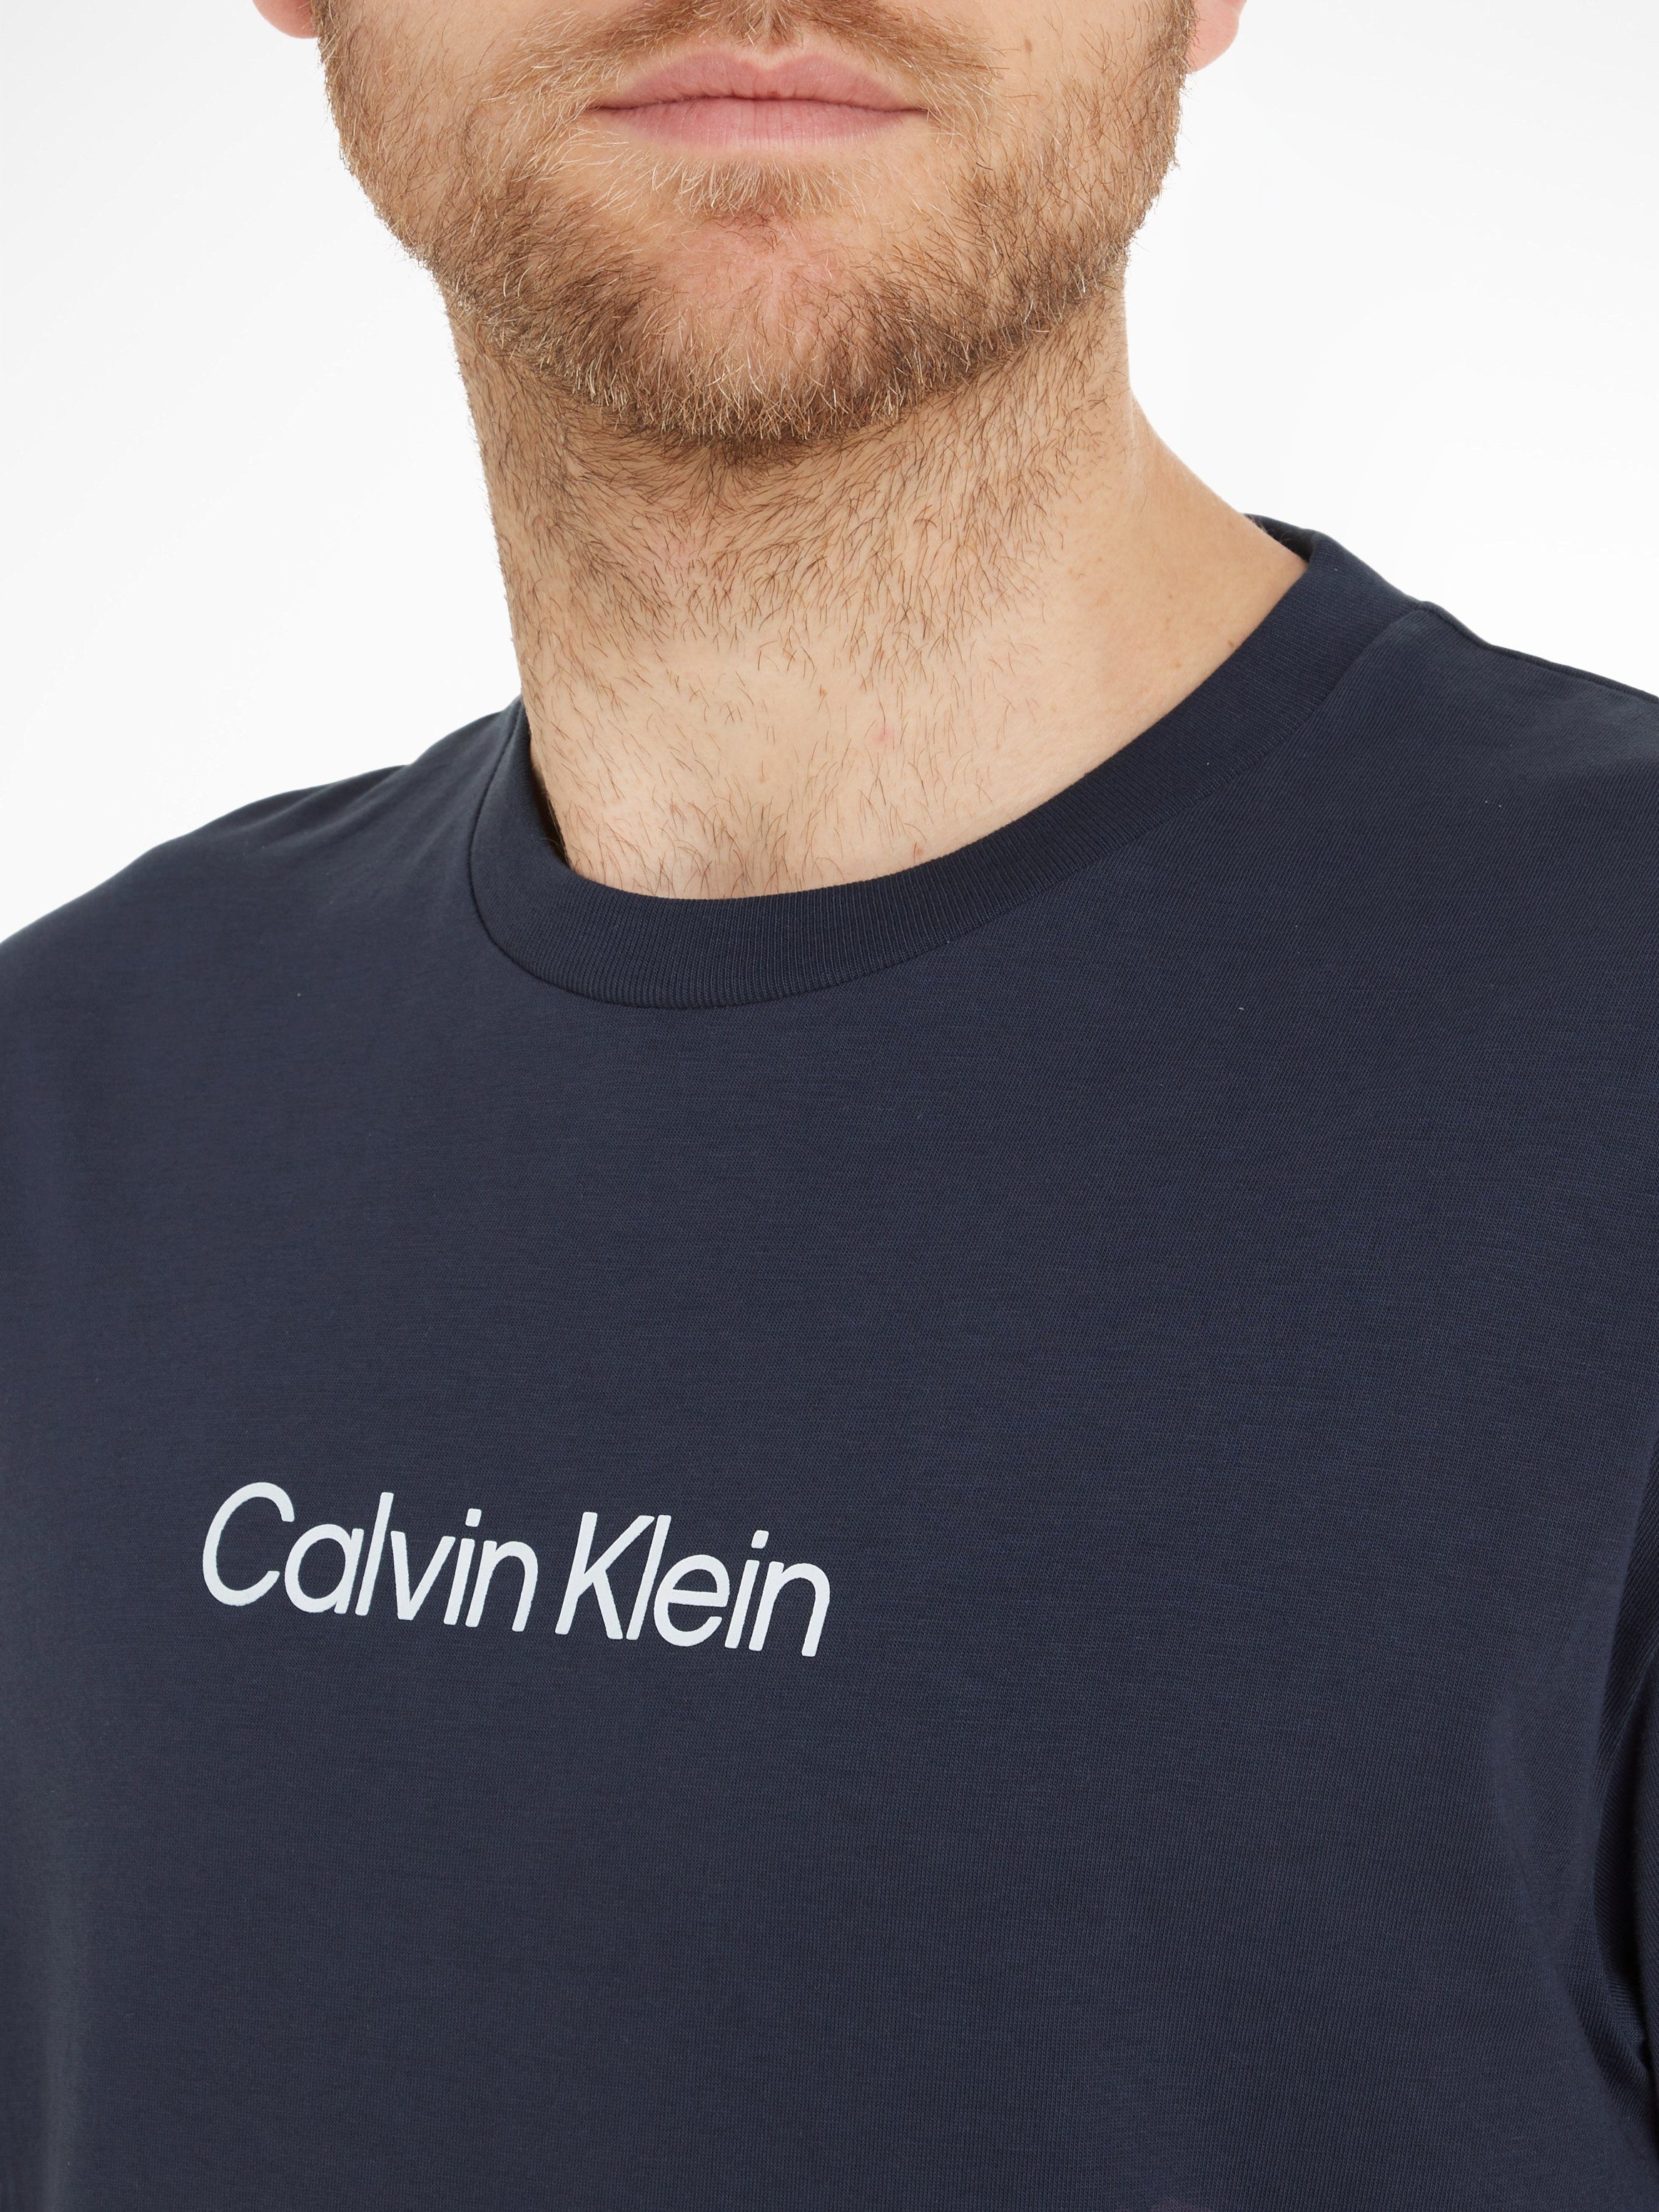 mit T-SHIRT LOGO Markenlabel Klein Night COMFORT HERO aufgedrucktem T-Shirt Sky Calvin